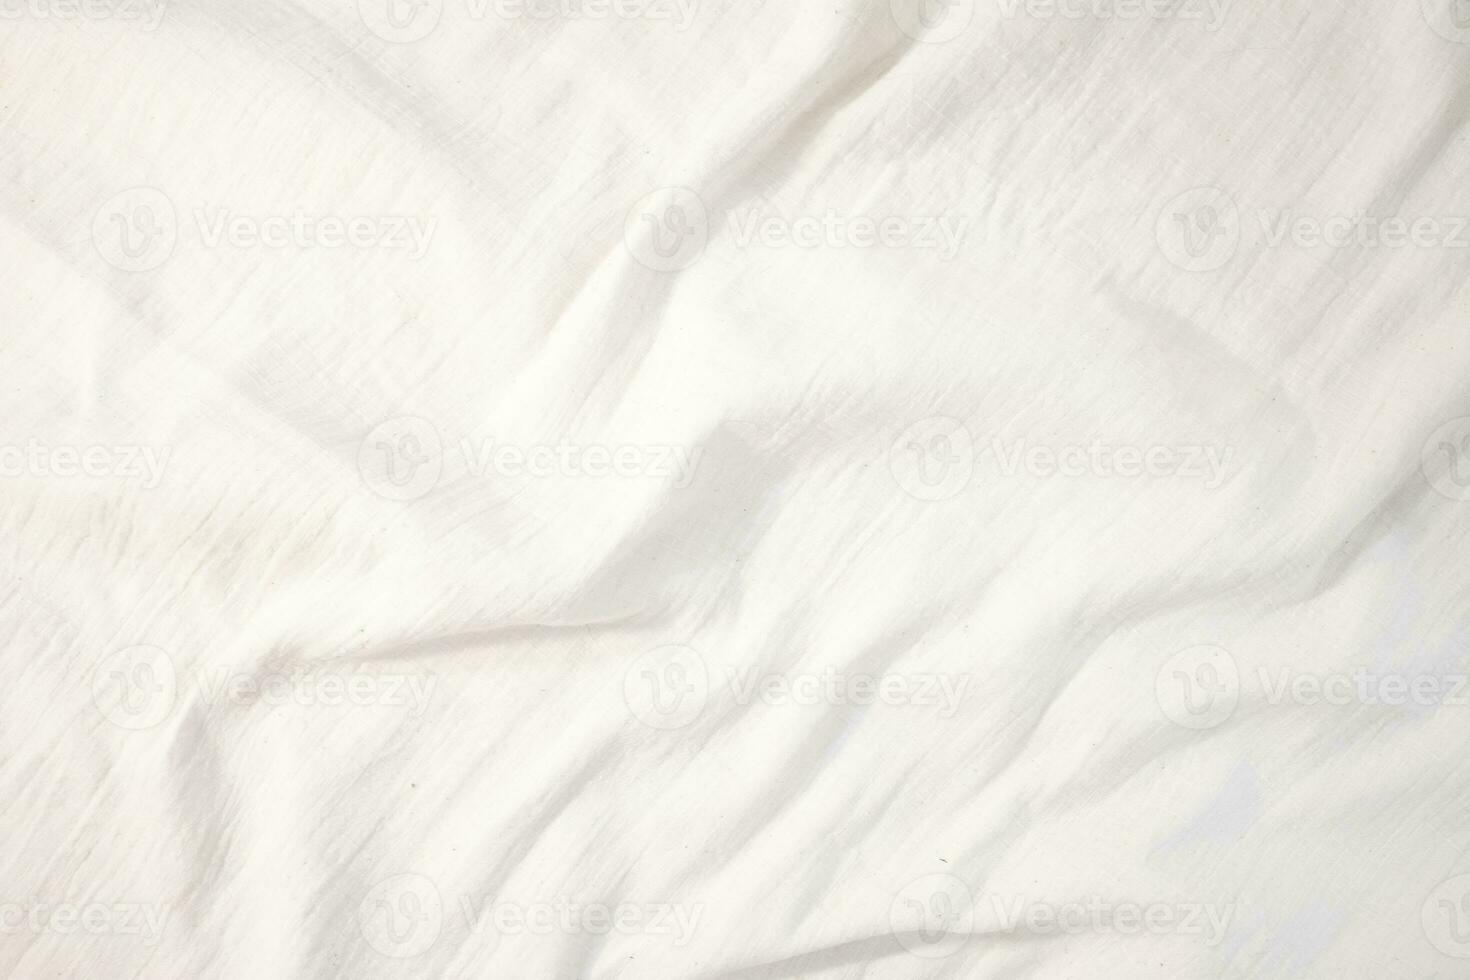 tecido pano de fundo branco linho tela de pintura amassado natural algodão tecido natural feito à mão linho topo Visão fundo orgânico eco têxteis branco tecido textura foto